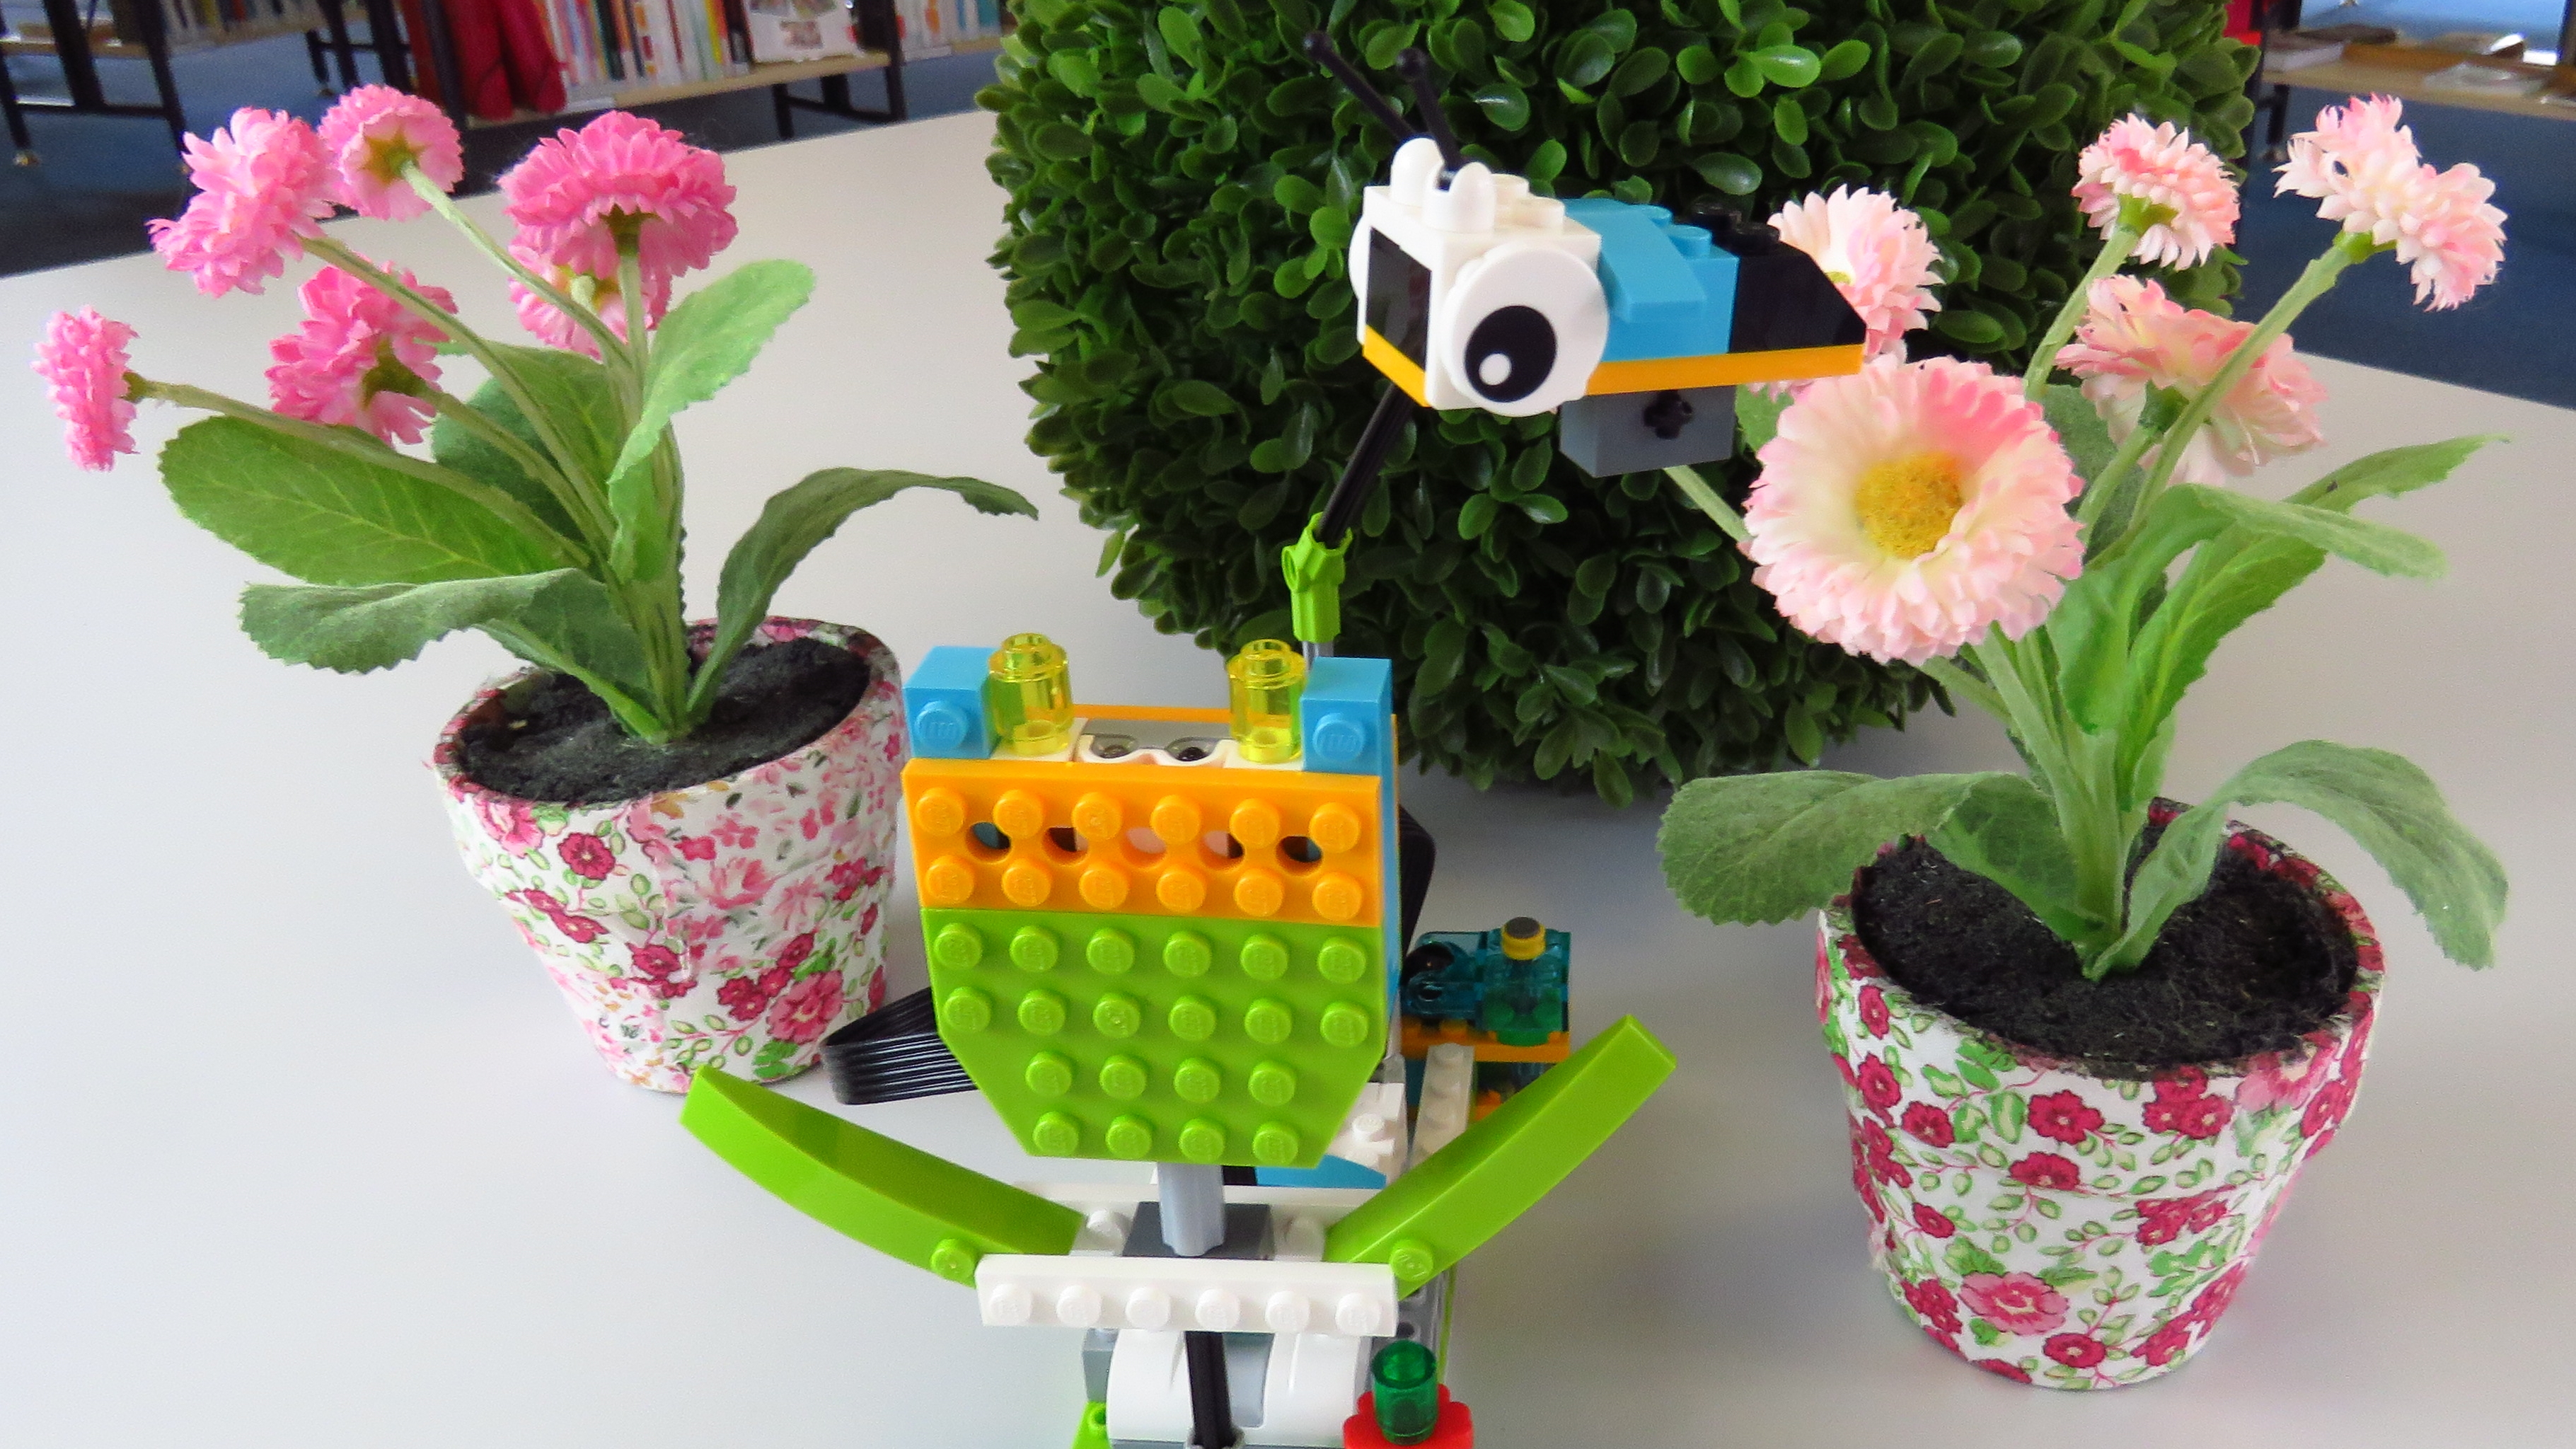 Bild eines Legomodells, eine Fliege, die motorgetrieben um eine Legoblume kreist